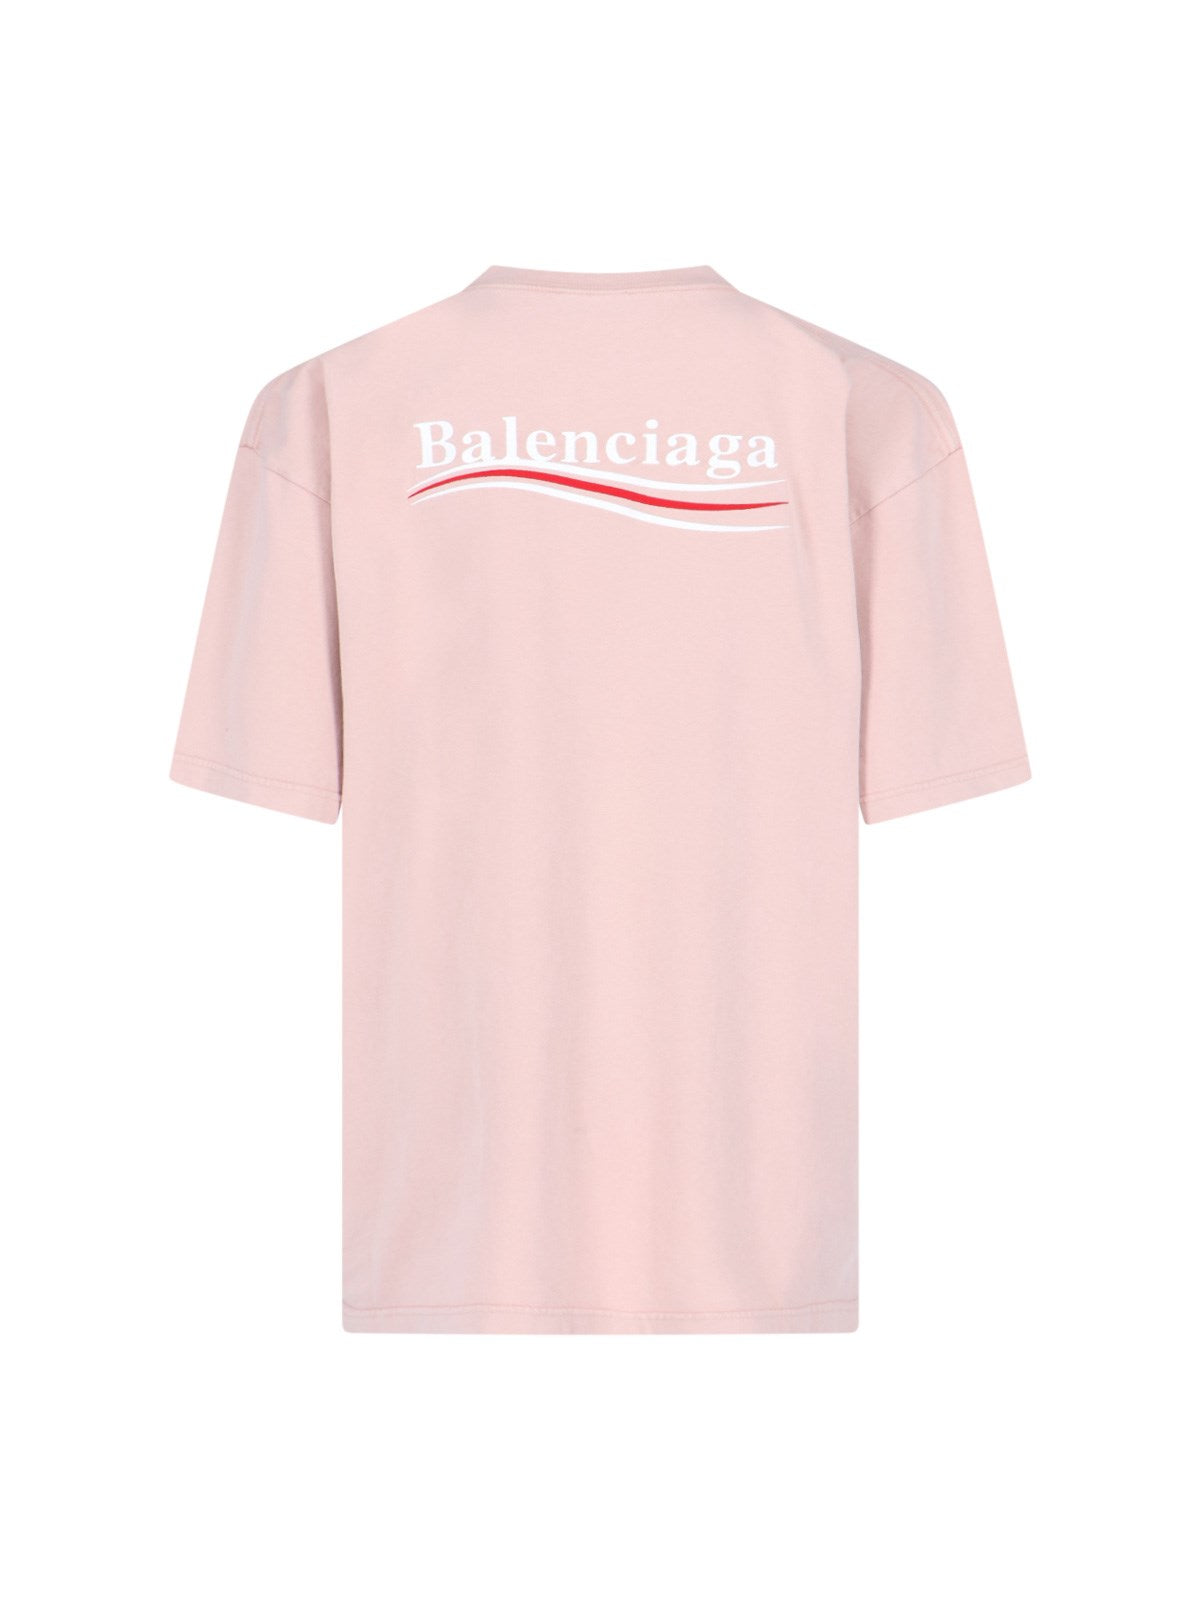 Balenciaga T-Shirt logo retro-t-shirt-Balenciaga-T-shirt logo retro Balenciaga, in cotone rosa, girocollo, maniche corte, ricamo logo bianco fronte e retro, orlo dritto.-Dresso